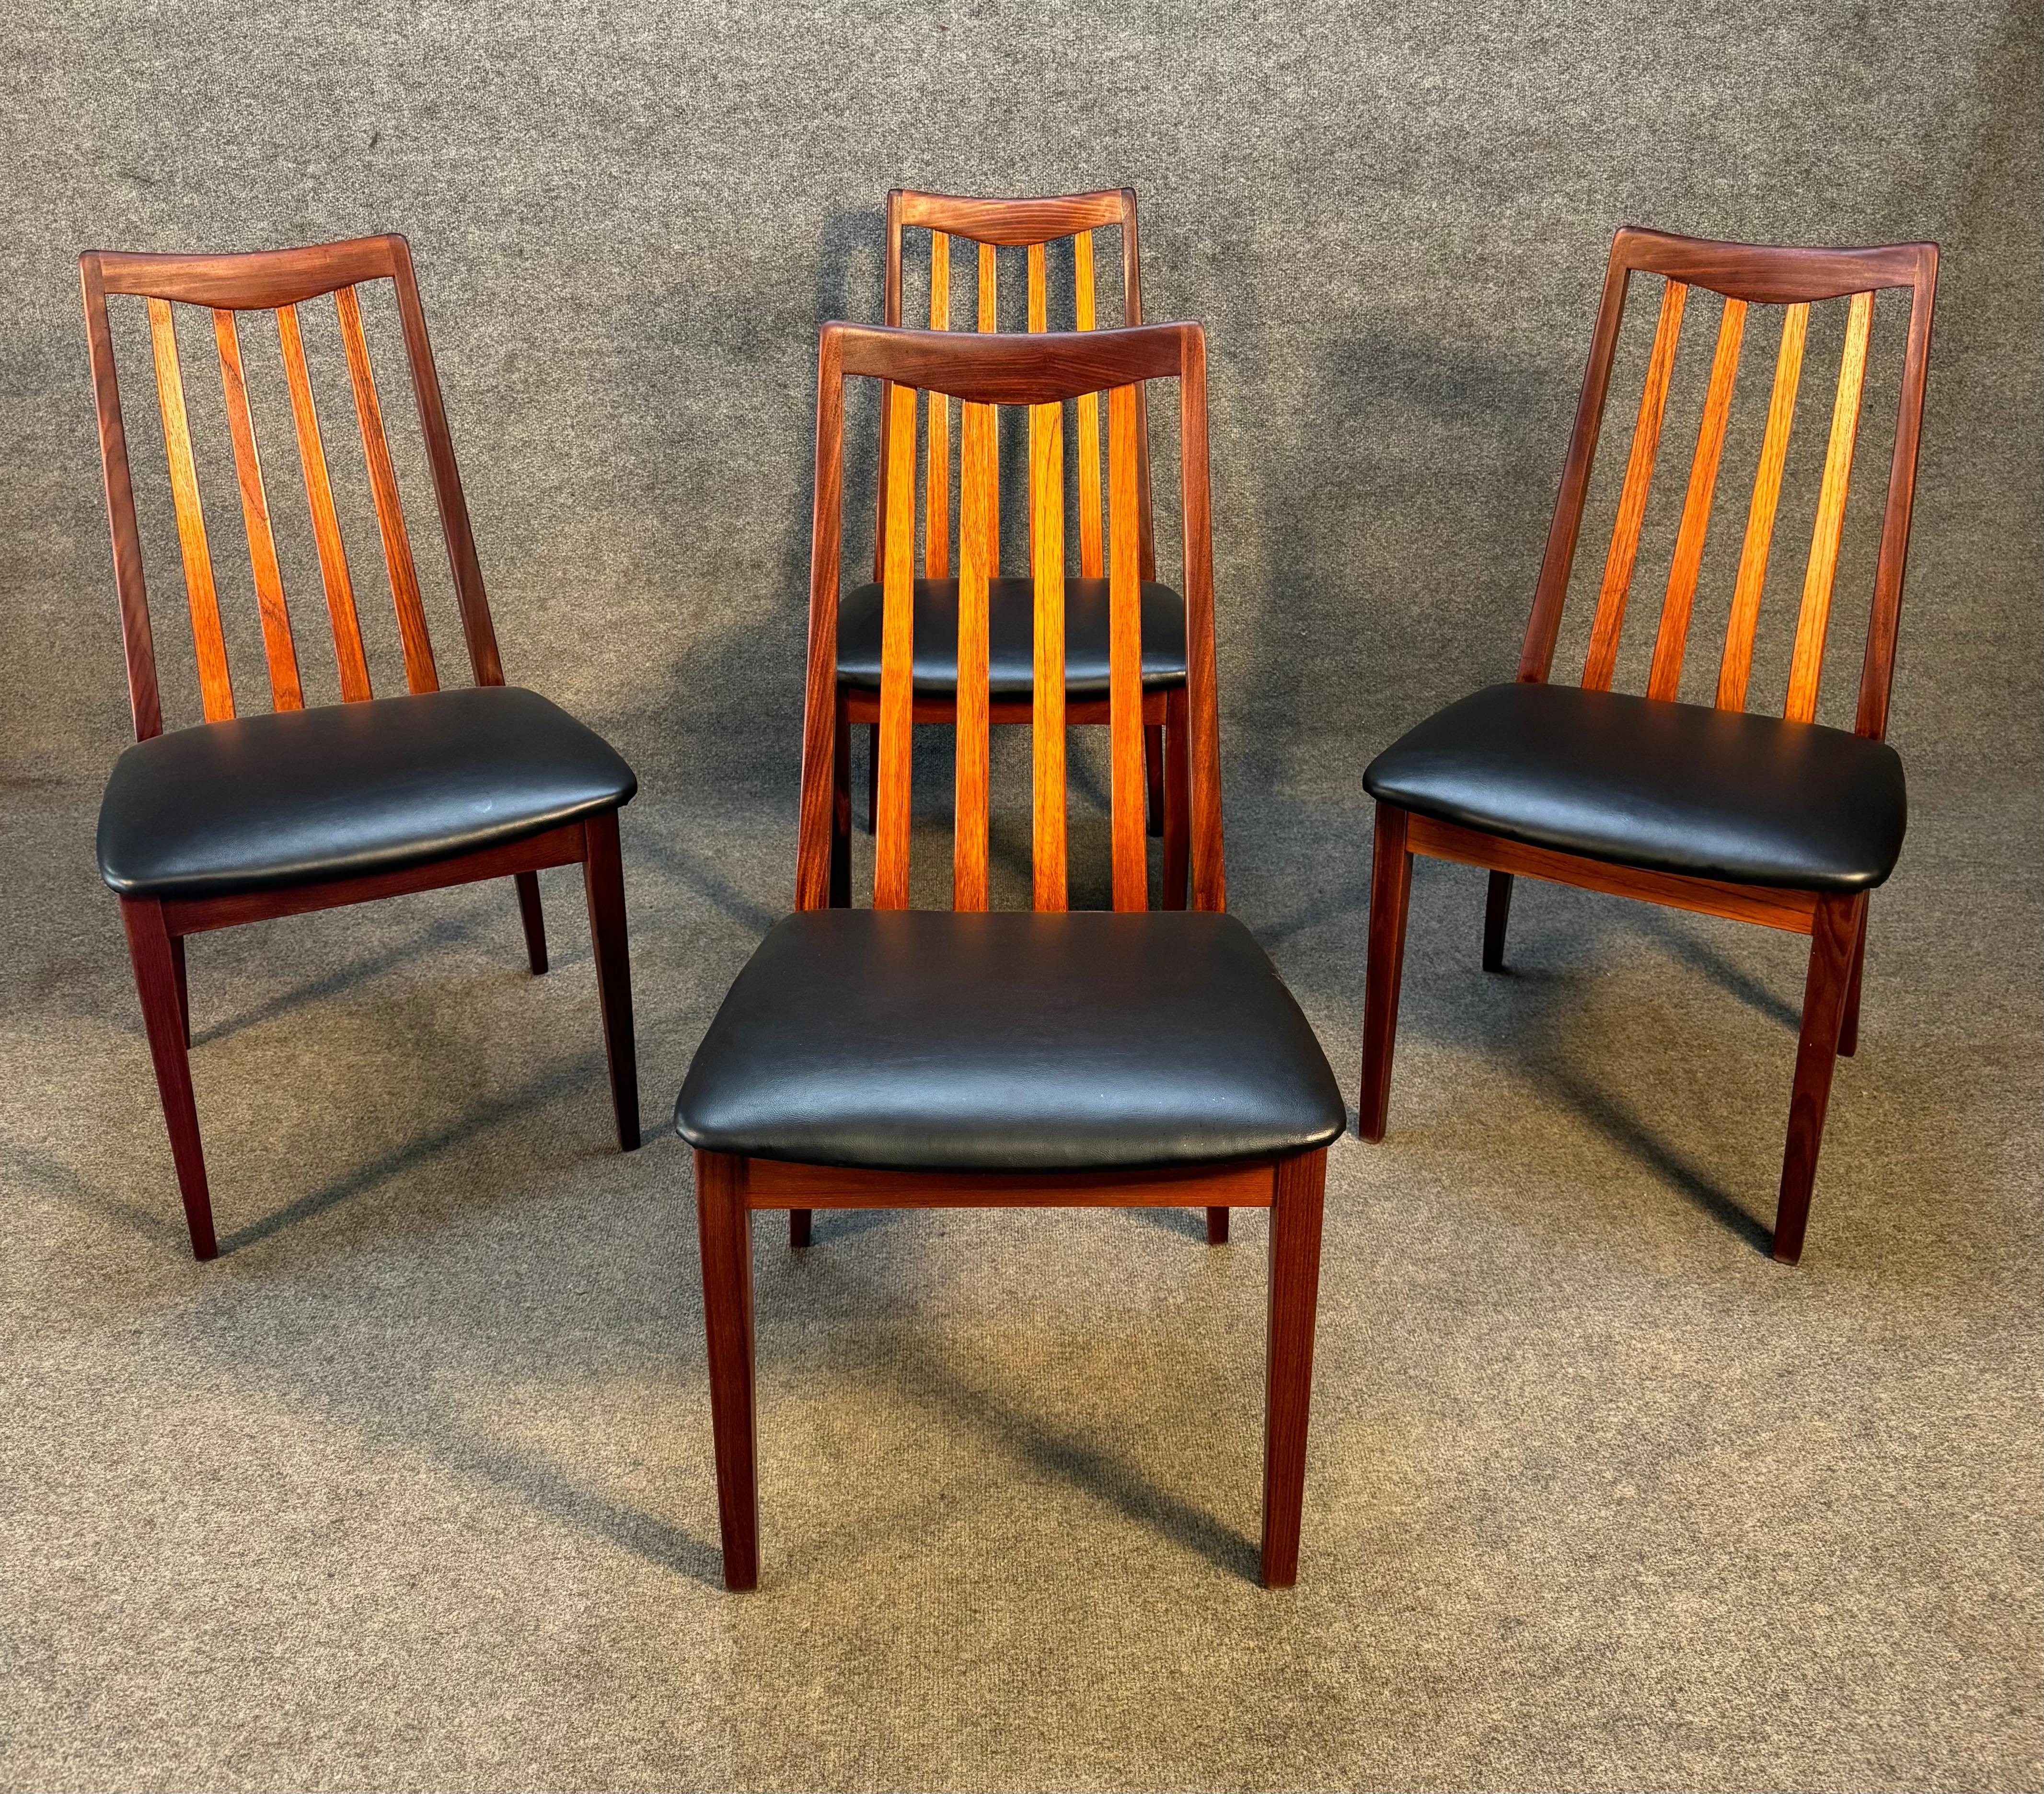 Hier ist ein Satz von vier schönen britischen MCM-Esszimmerstühlen aus Teakholz, hergestellt von G-Plan in den 1960er Jahren. Diese bequemen Stühle mit hoher Rückenlehne, die vor kurzem aus England nach Kalifornien importiert wurden, zeichnen sich